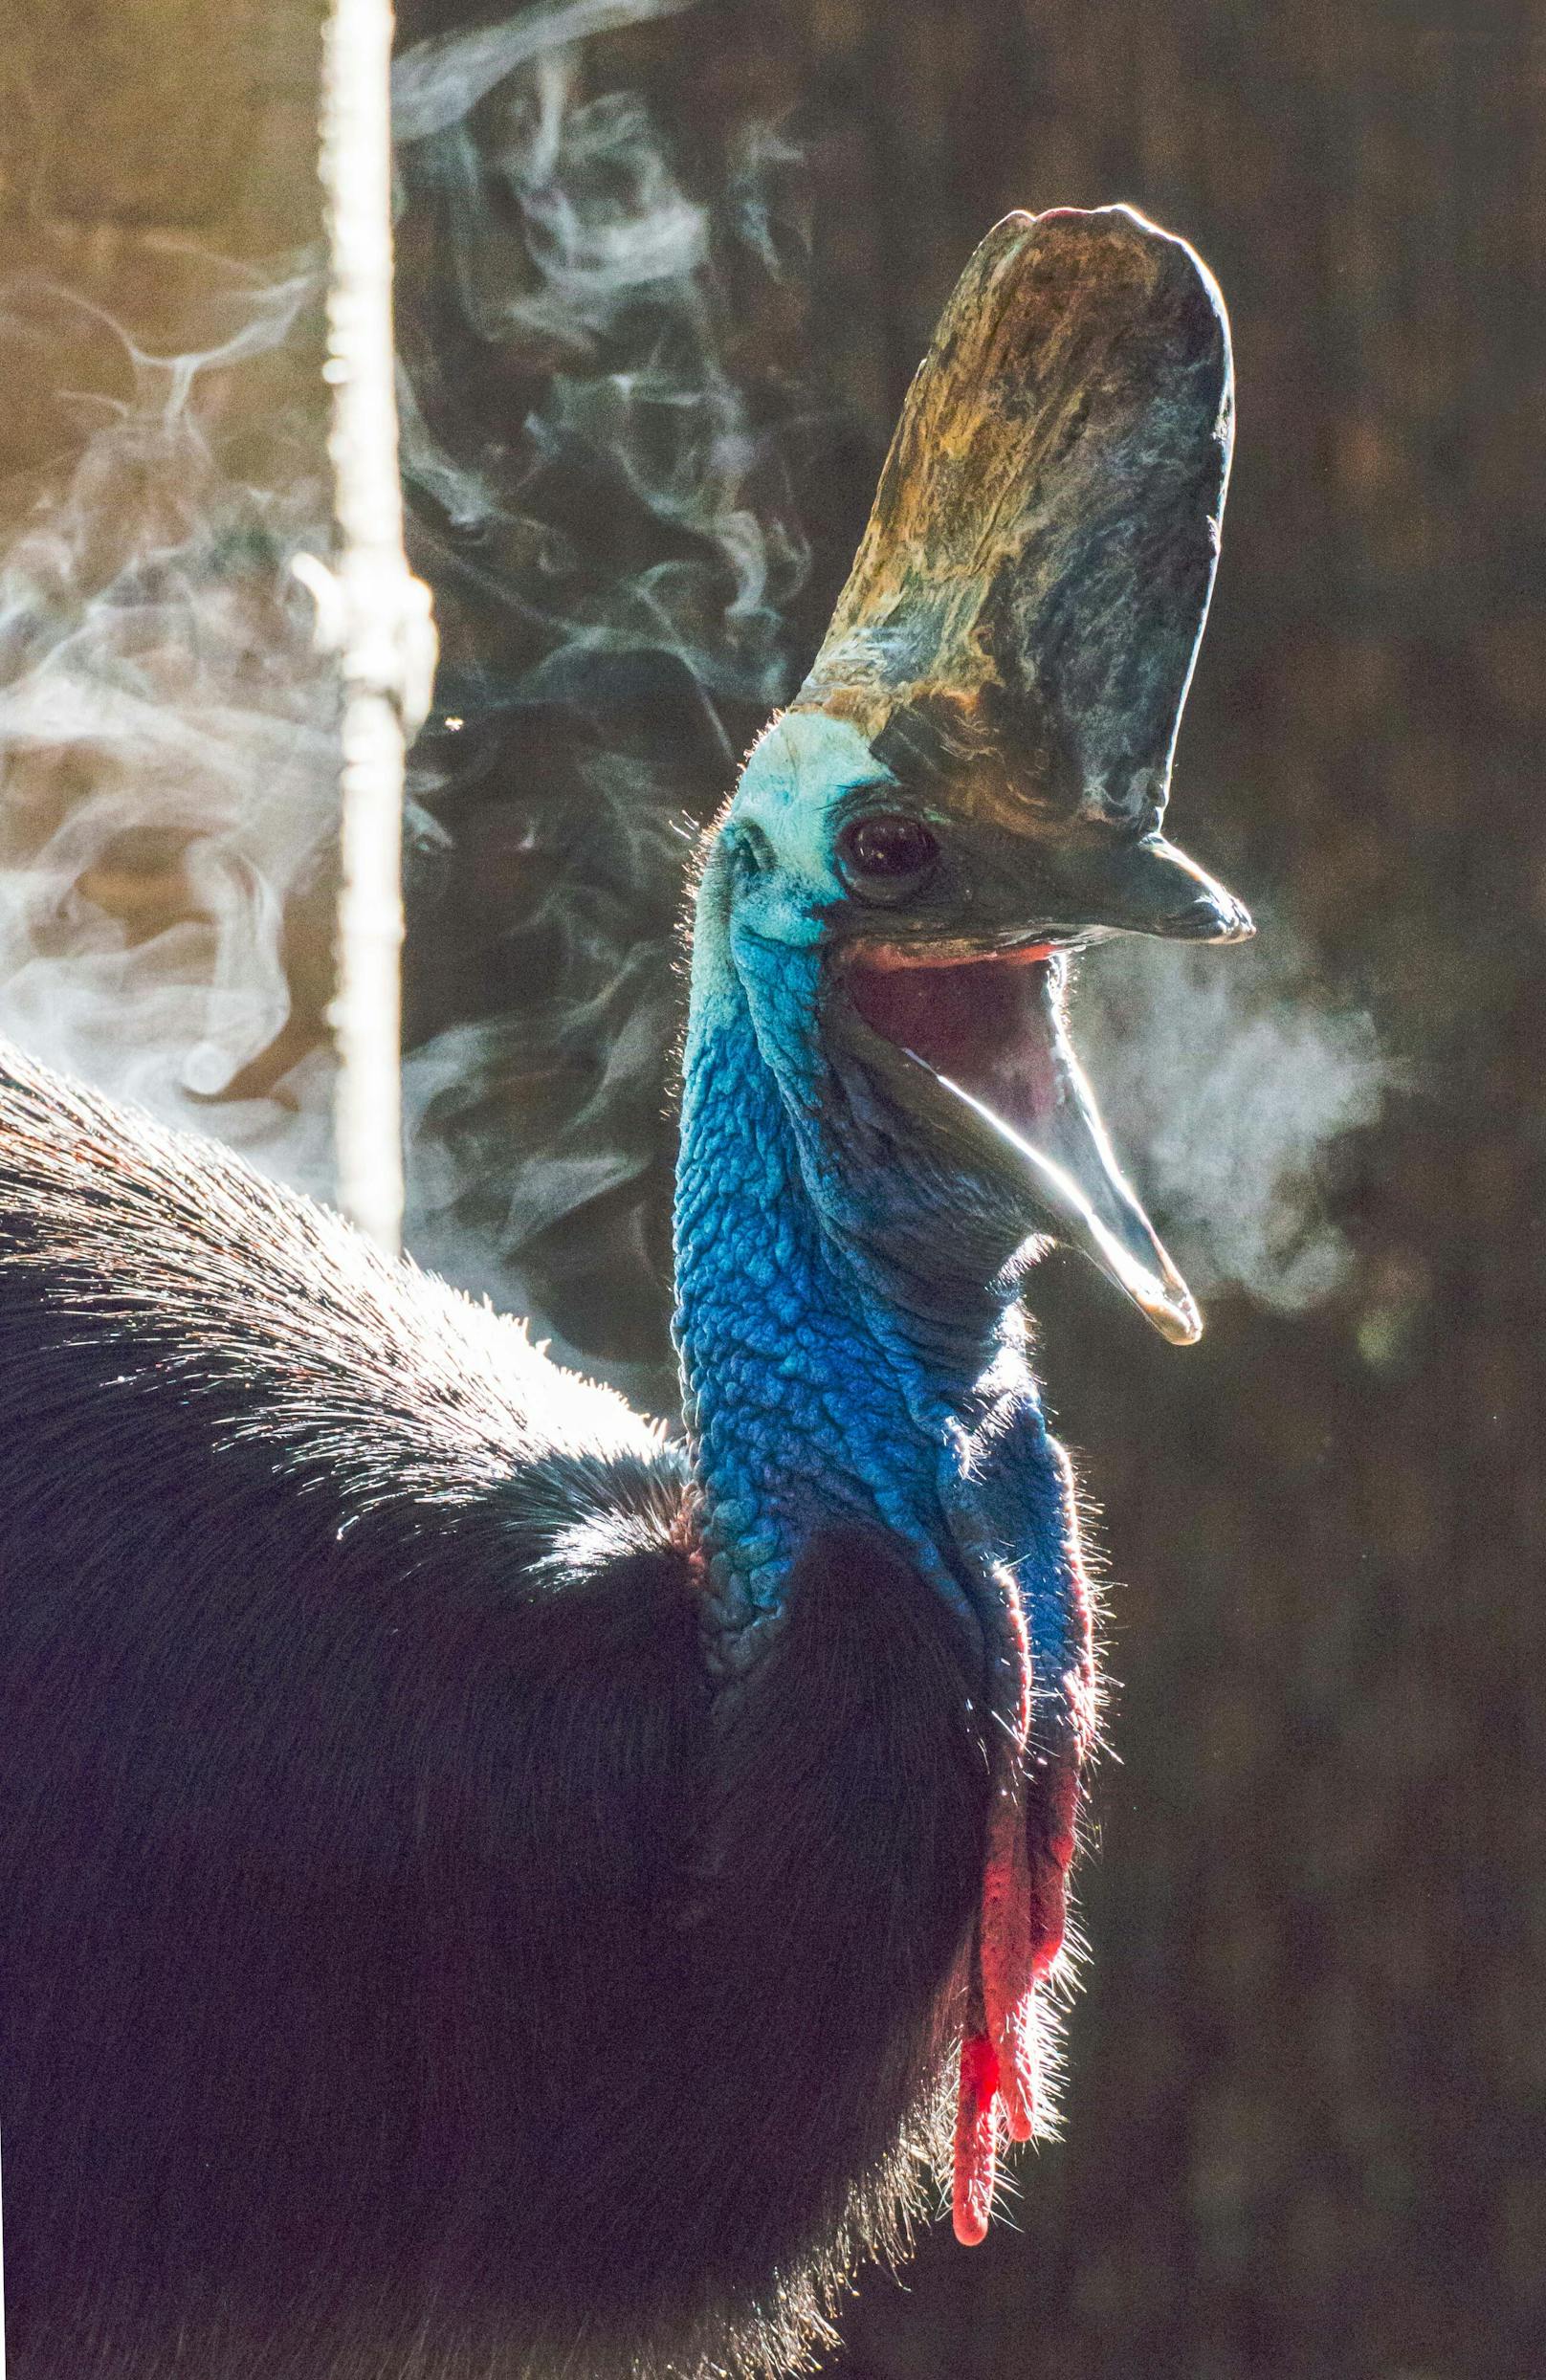 Kasuare gelten nach Angaben des San Diego Zoos als "tödlichste Vogelart der Welt"